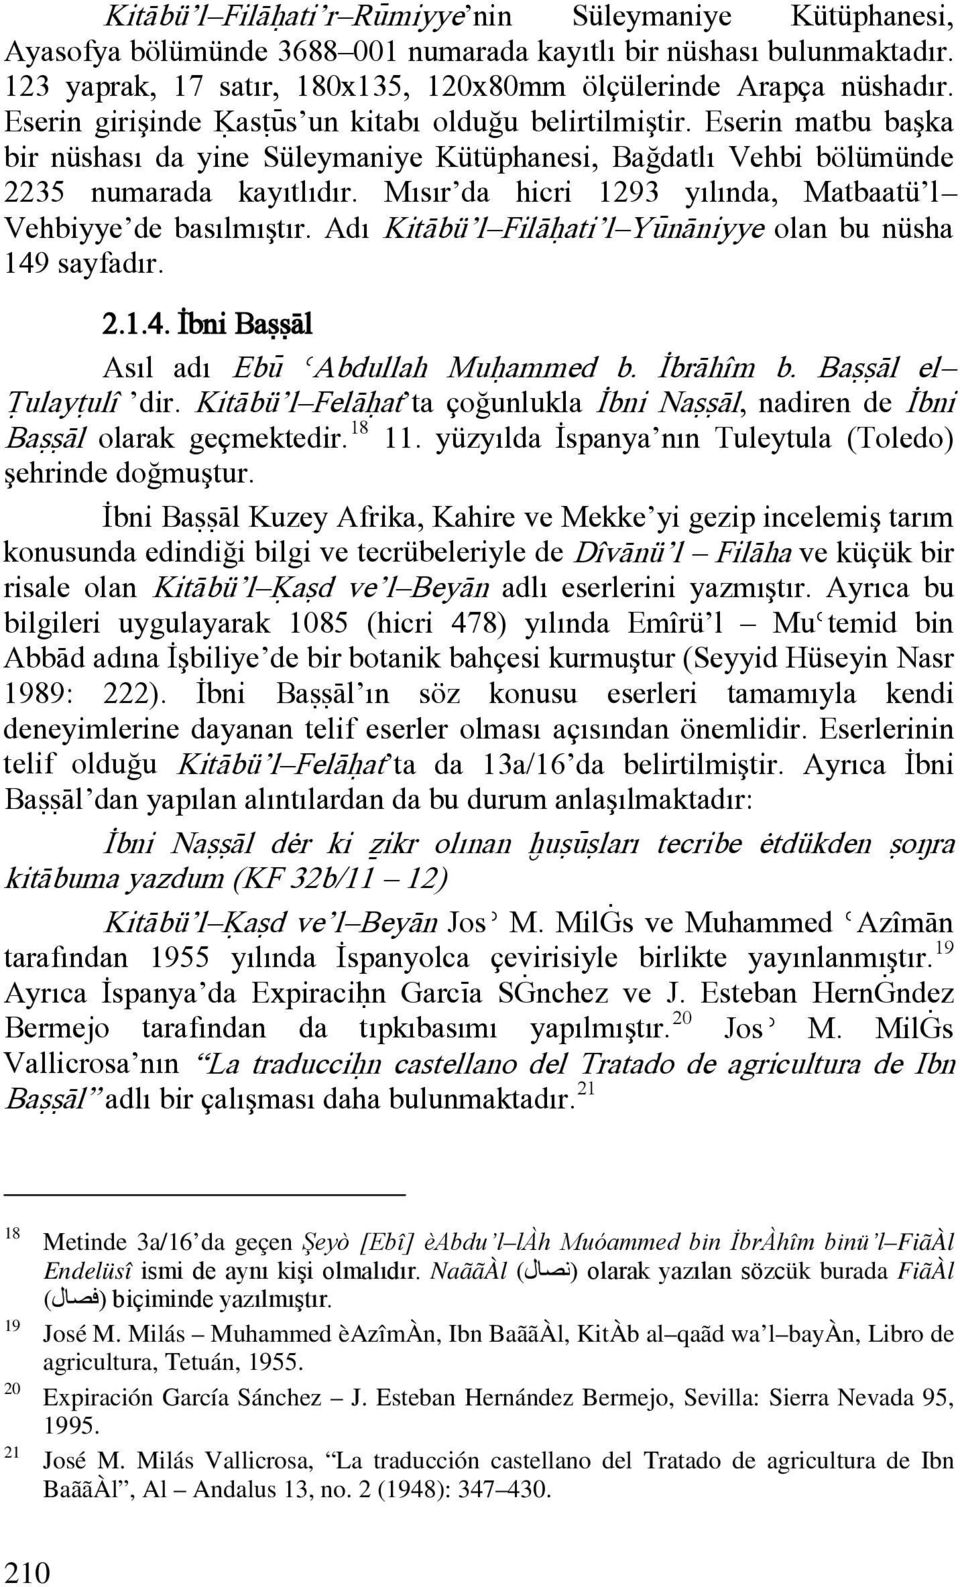 Mısır da hicri 1293 yılında, Matbaatü l Vehbiyye de basılmıştır. Adı KitÀbü l FilÀóati l YÿnÀniyye olan bu nüsha 149 sayfadır. 2.1.4. İbni BaããÀl Asıl adı Ebÿ èabdullah Muóammed b. İbrÀhîm b.